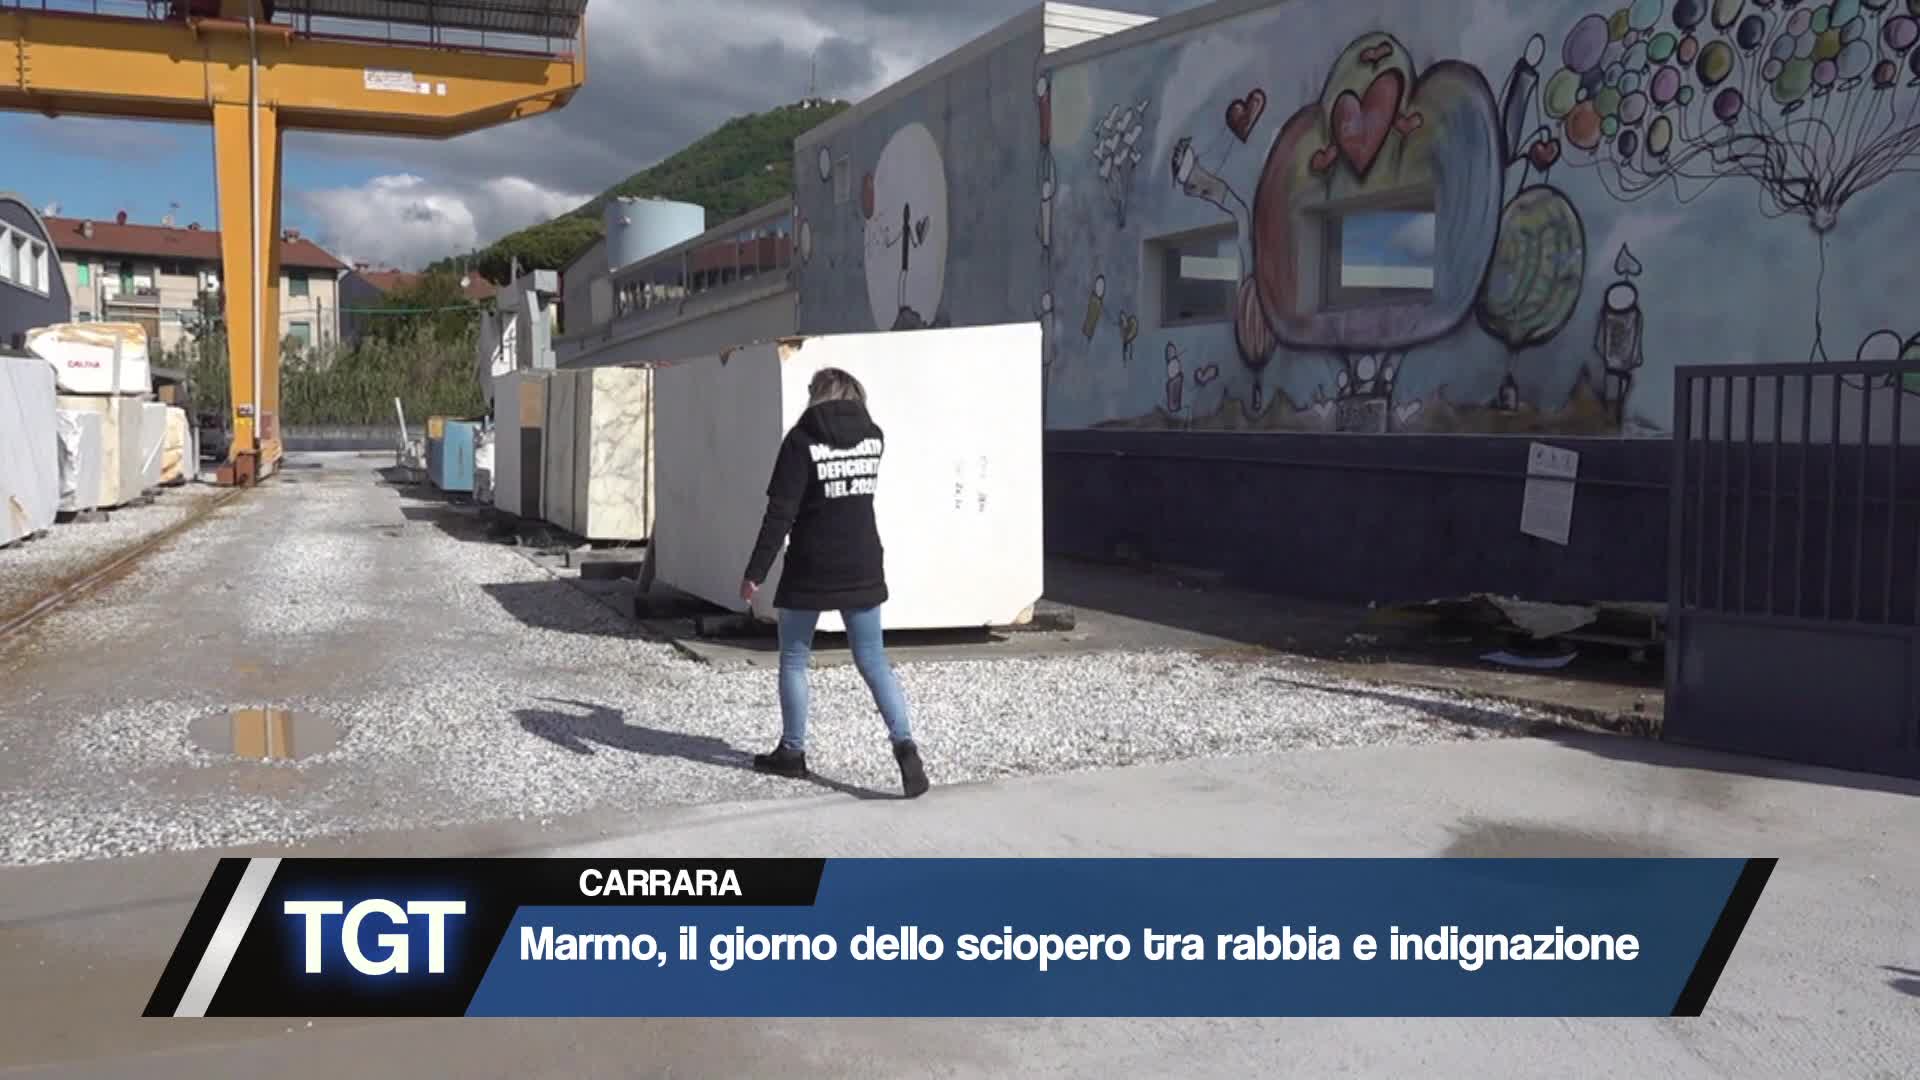 Marmo, il giorno dello sciopero a Carrara Thumbnail